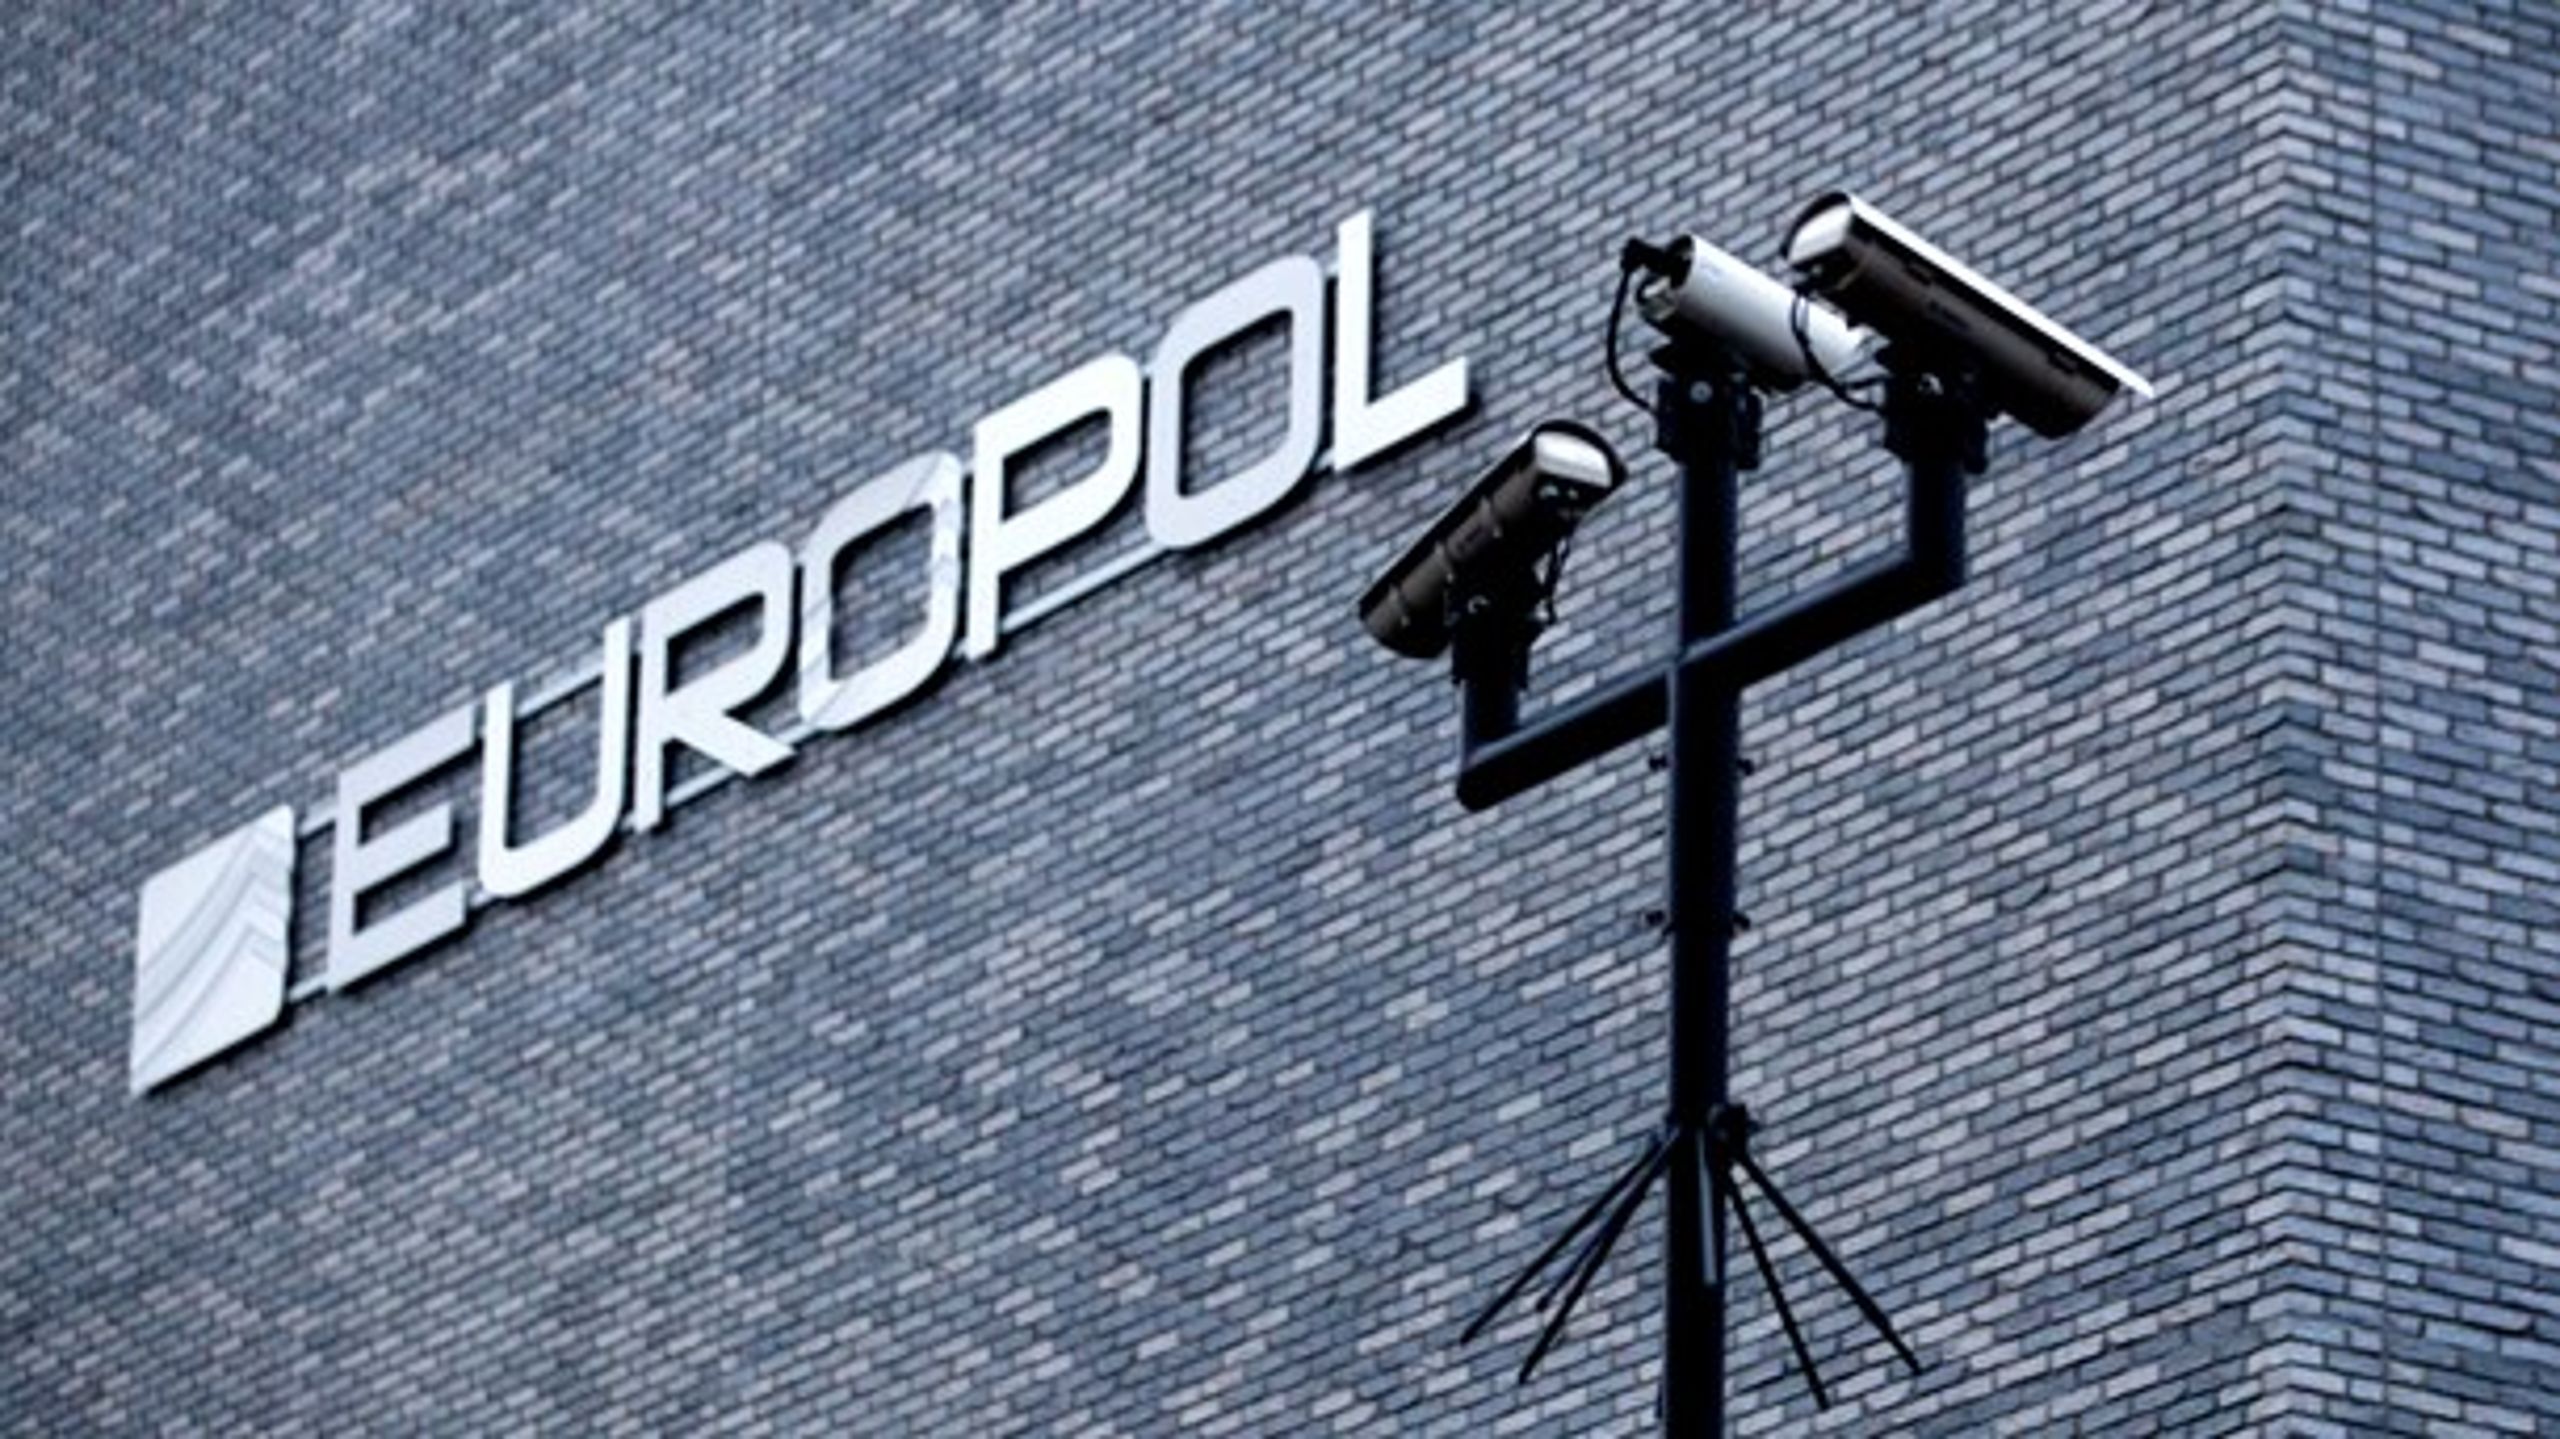 Uenighed om Danmarks position i Europols kontrolgruppe udskyder beslutningen.